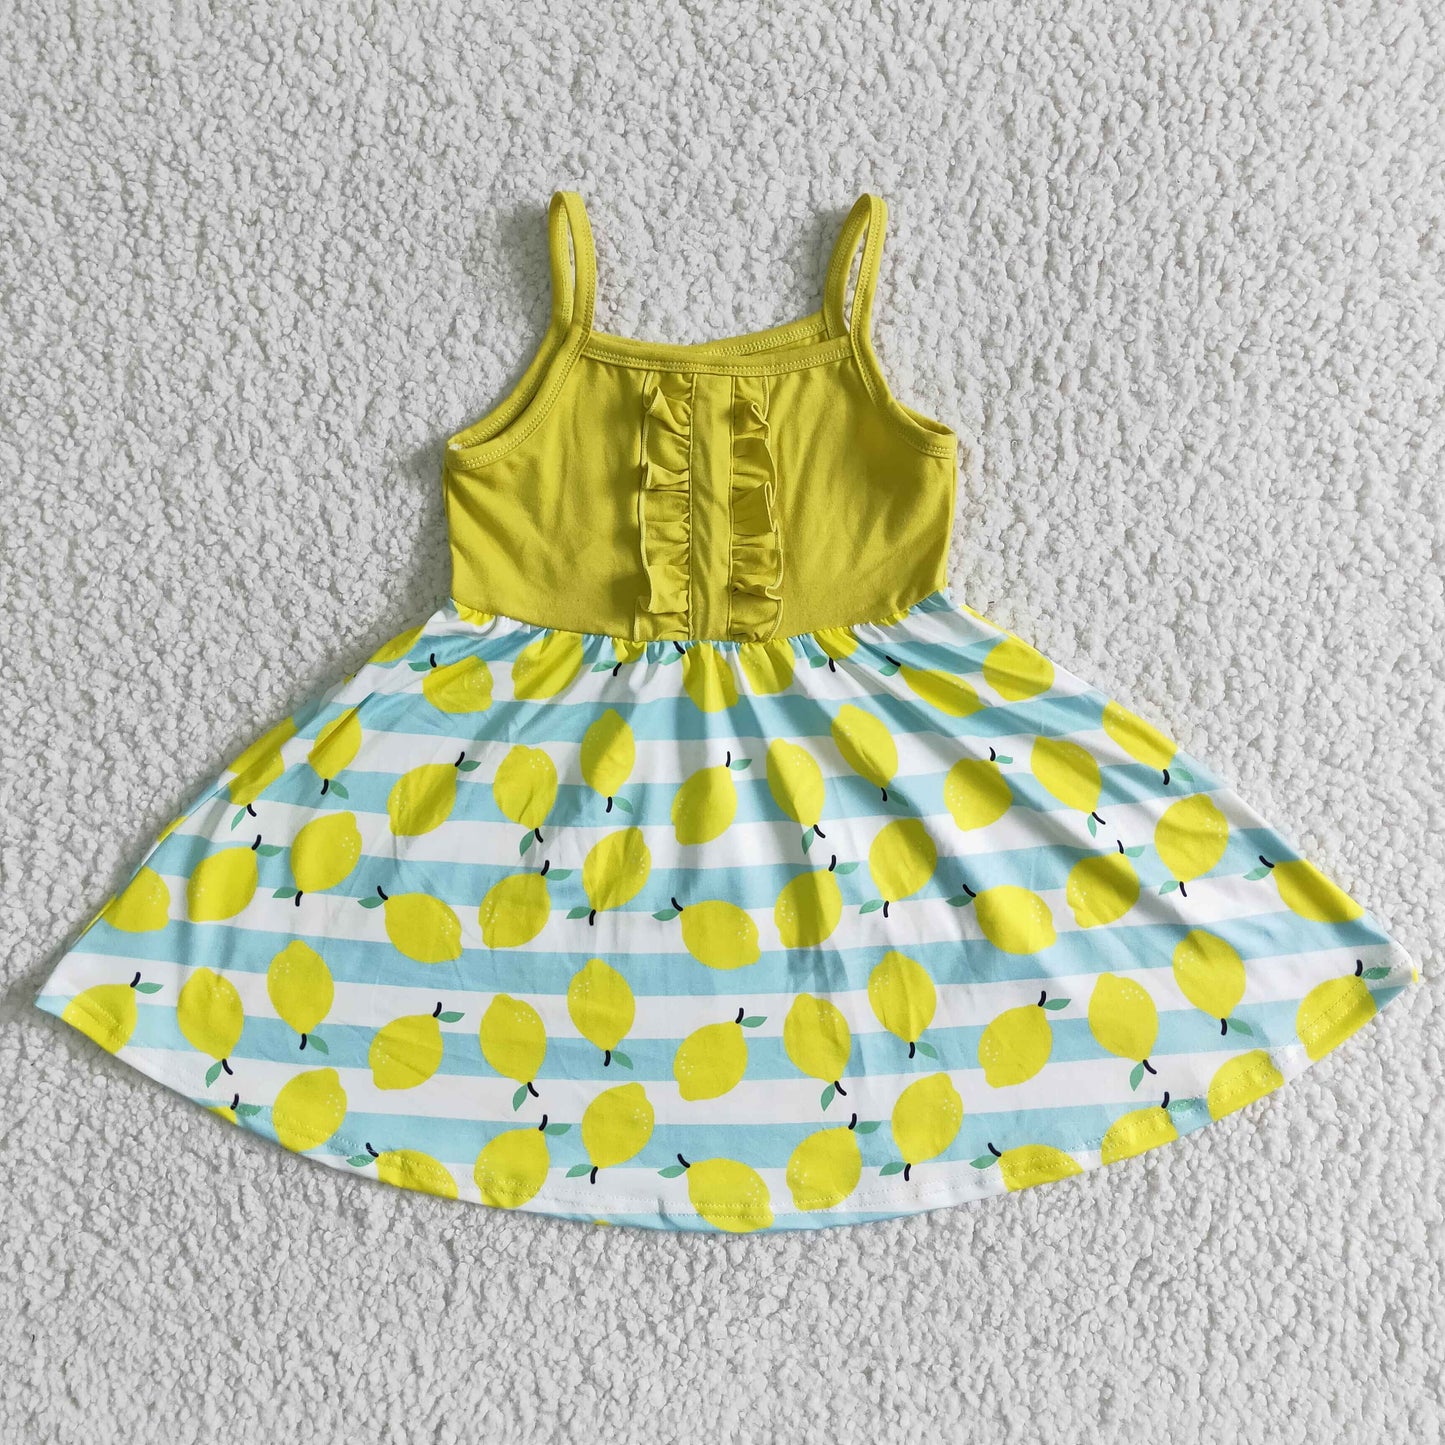 Sleeveless lemon print baby girls summer twirl dresses